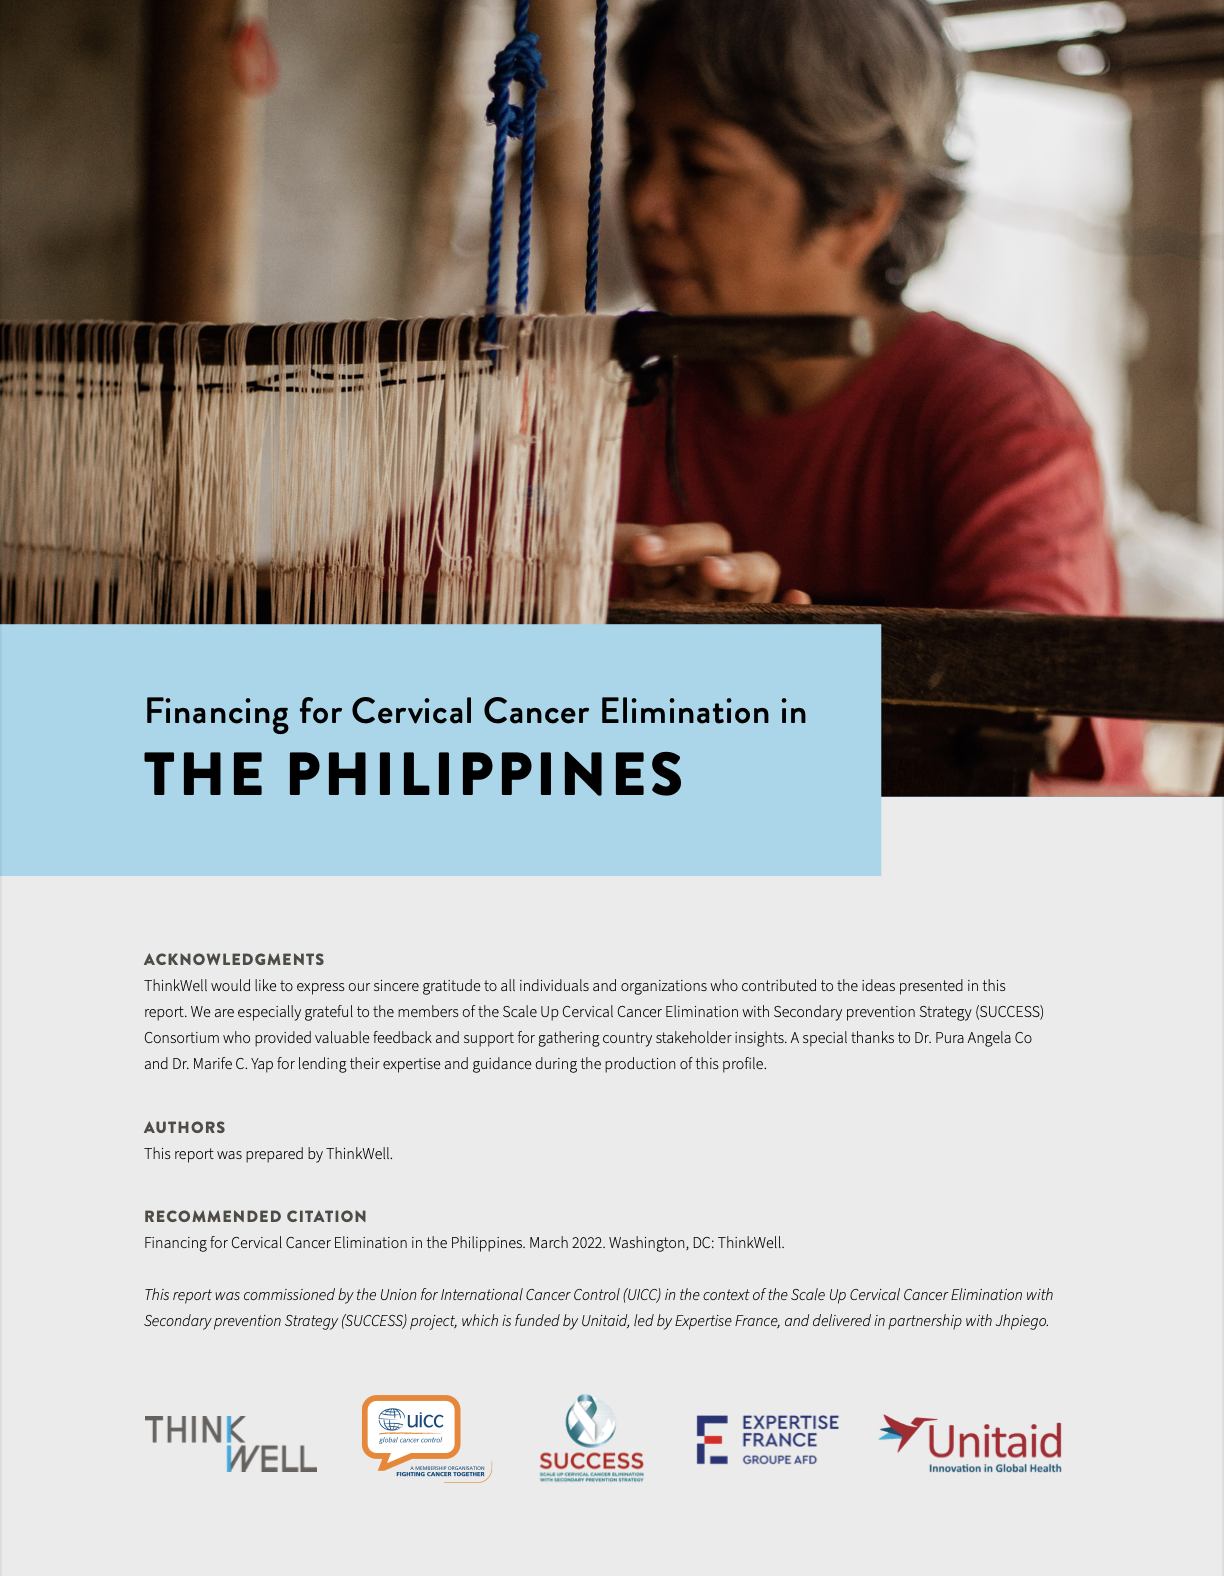 Philippines: Financing for Cervical Cancer Elimination